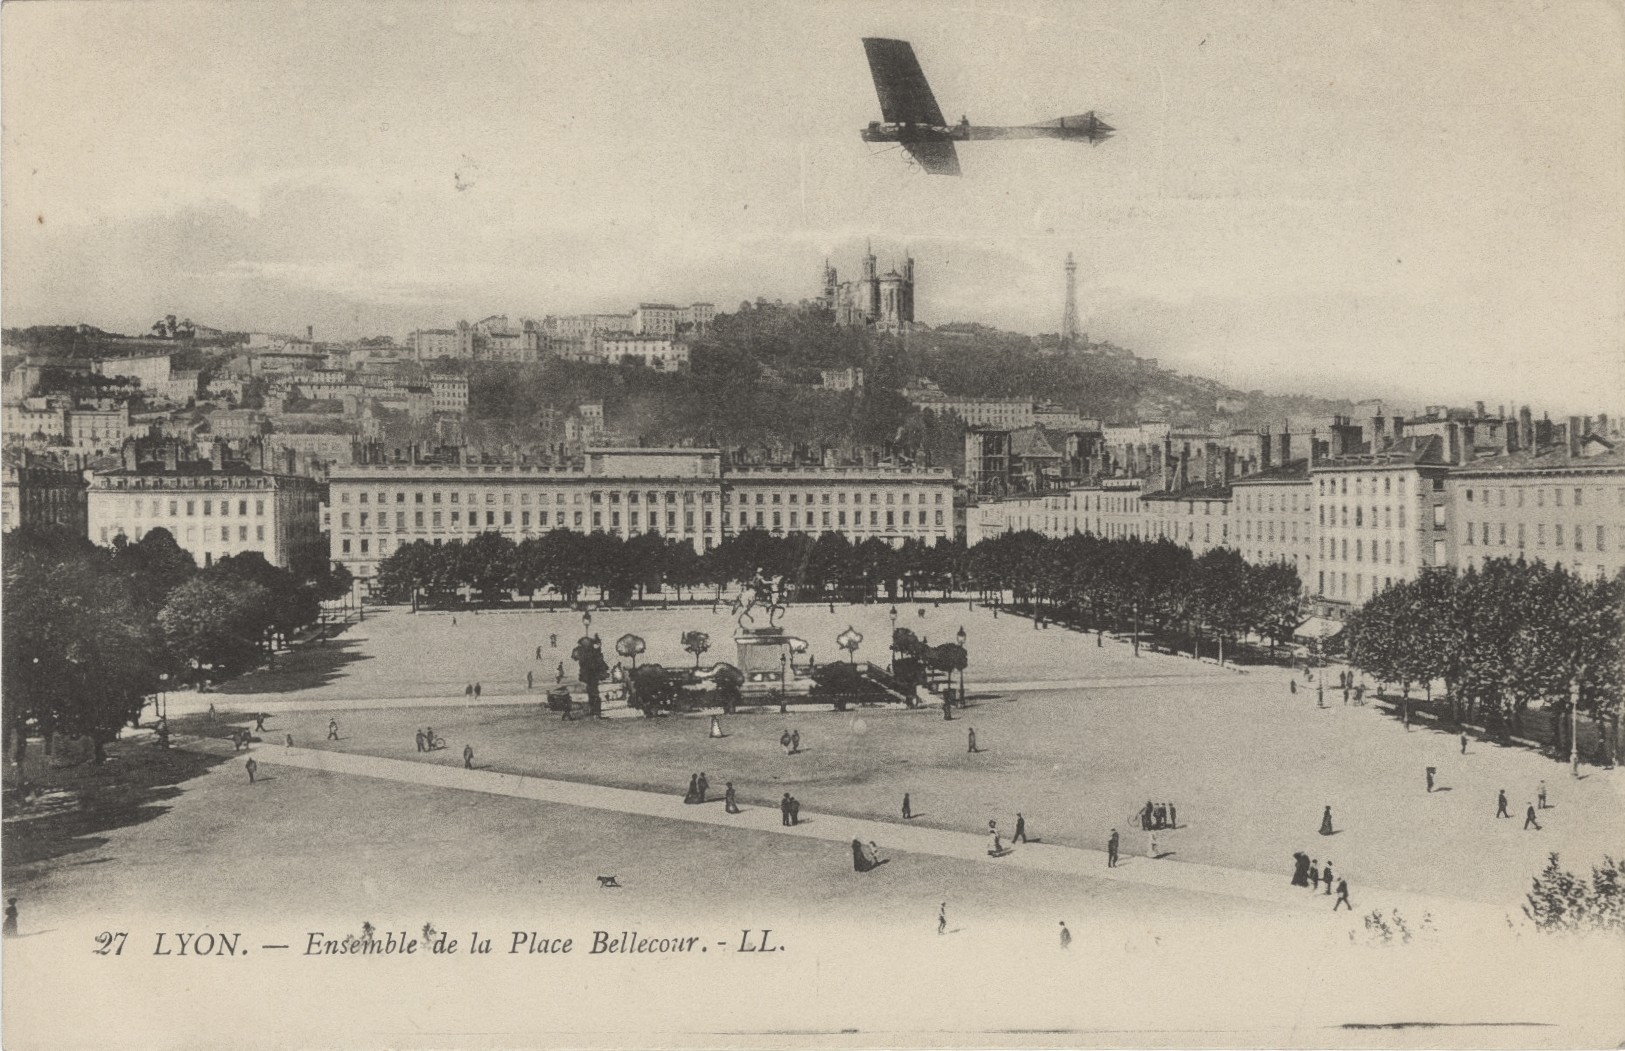 Lyon-Ensemble de la place Bellecour : carte postale NB par Léon & Lévy (vers 1910, cote : 4FI/1111)